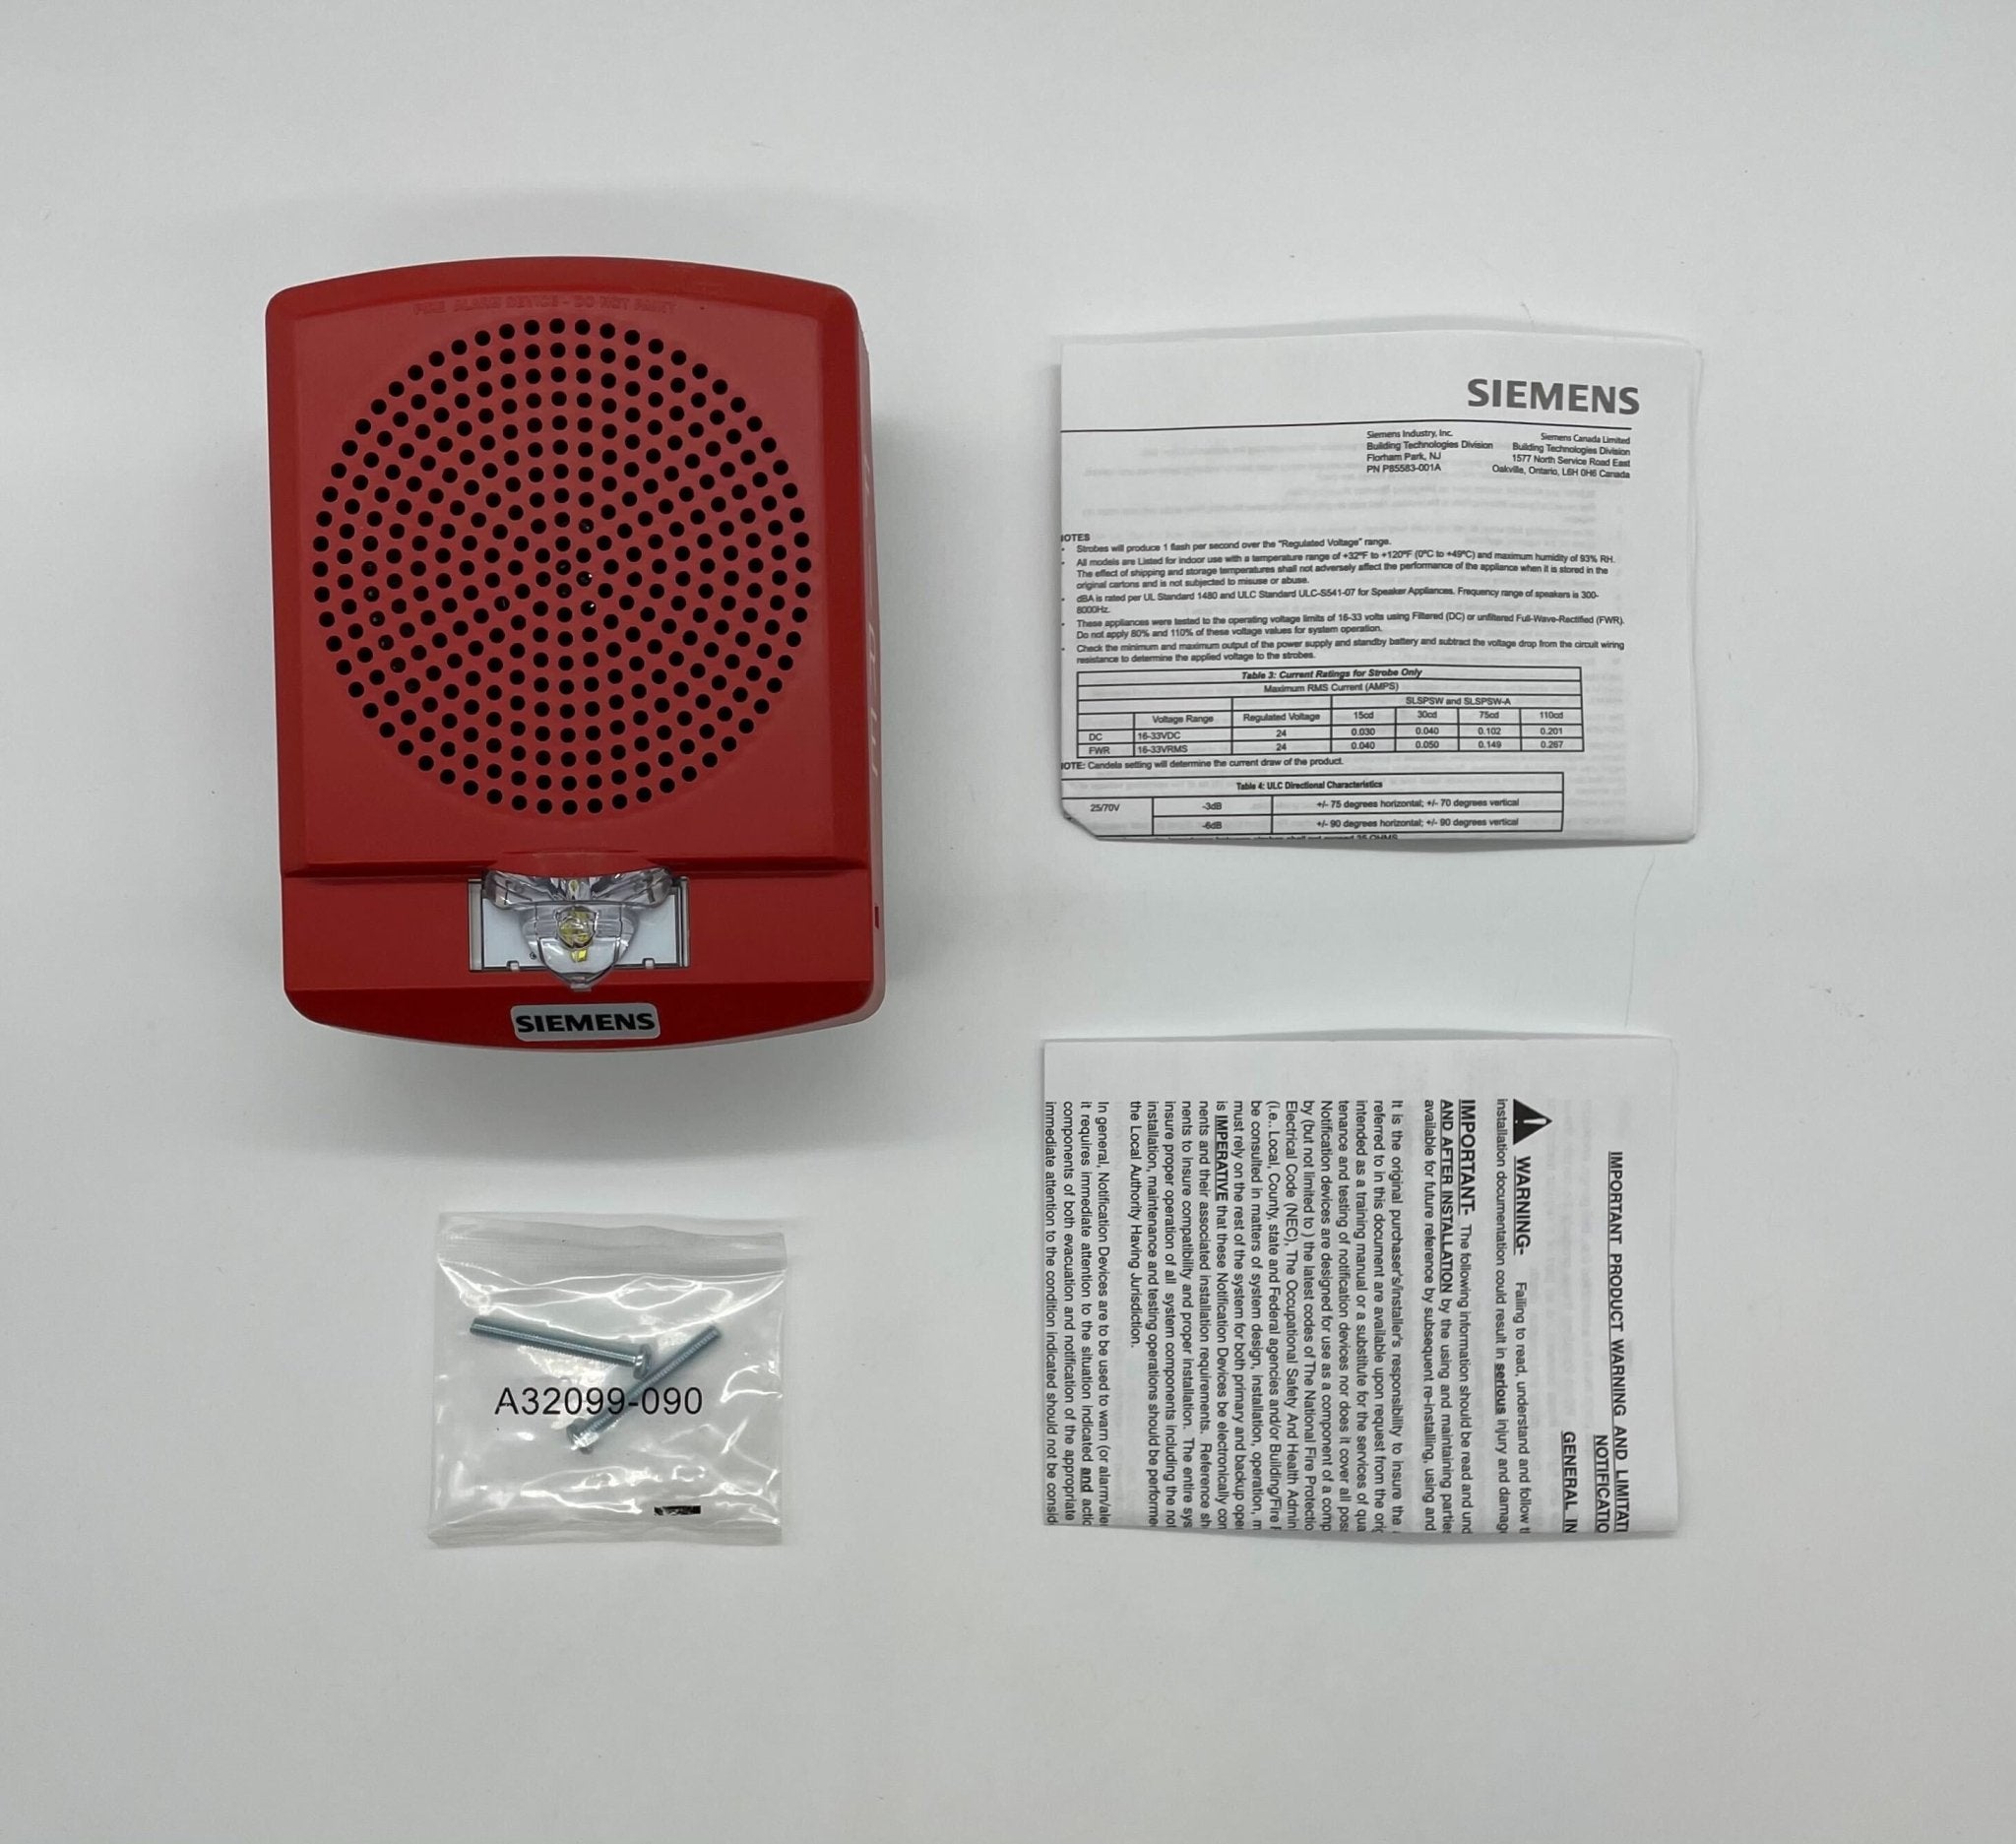 Siemens SLSPSWR-F - The Fire Alarm Supplier